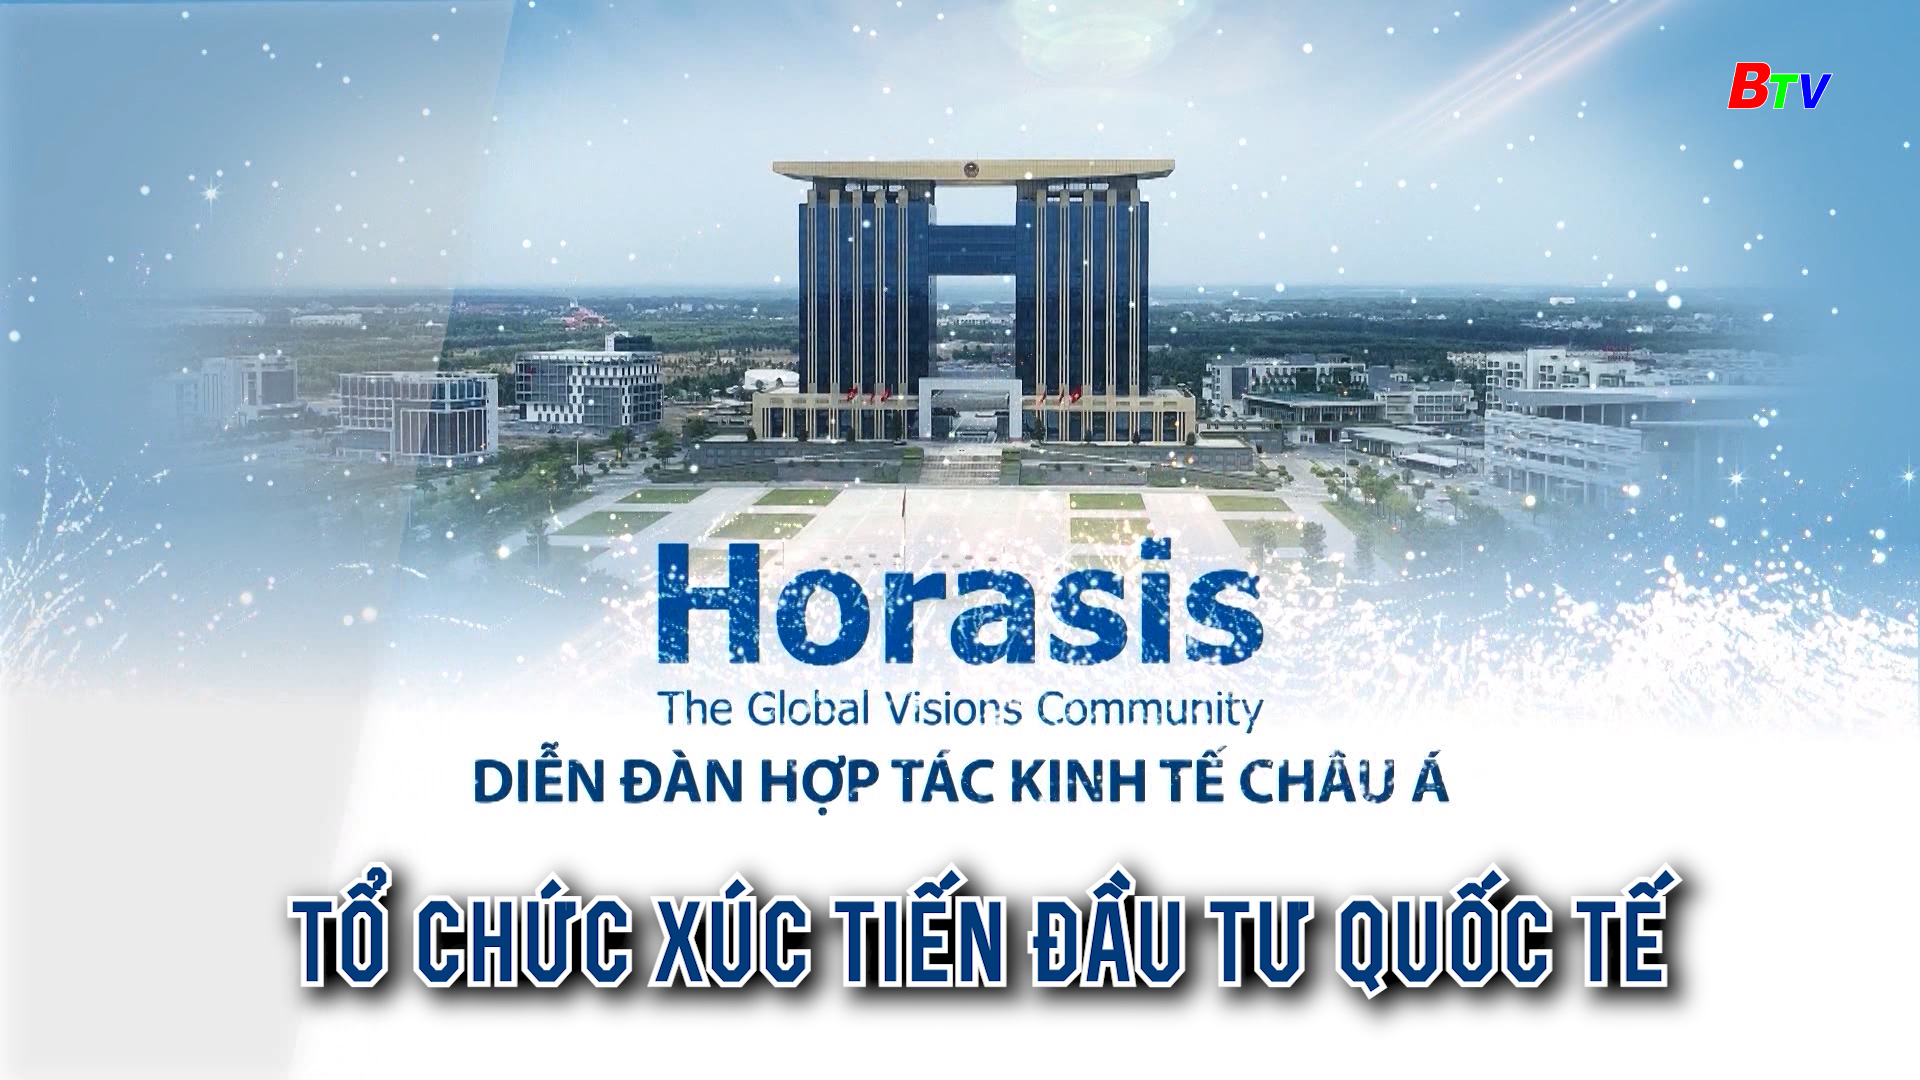 Diễn đàn Hợp tác kinh tế Horasis châu Á - Tổ chức xúc tiến đầu tư Quốc tế